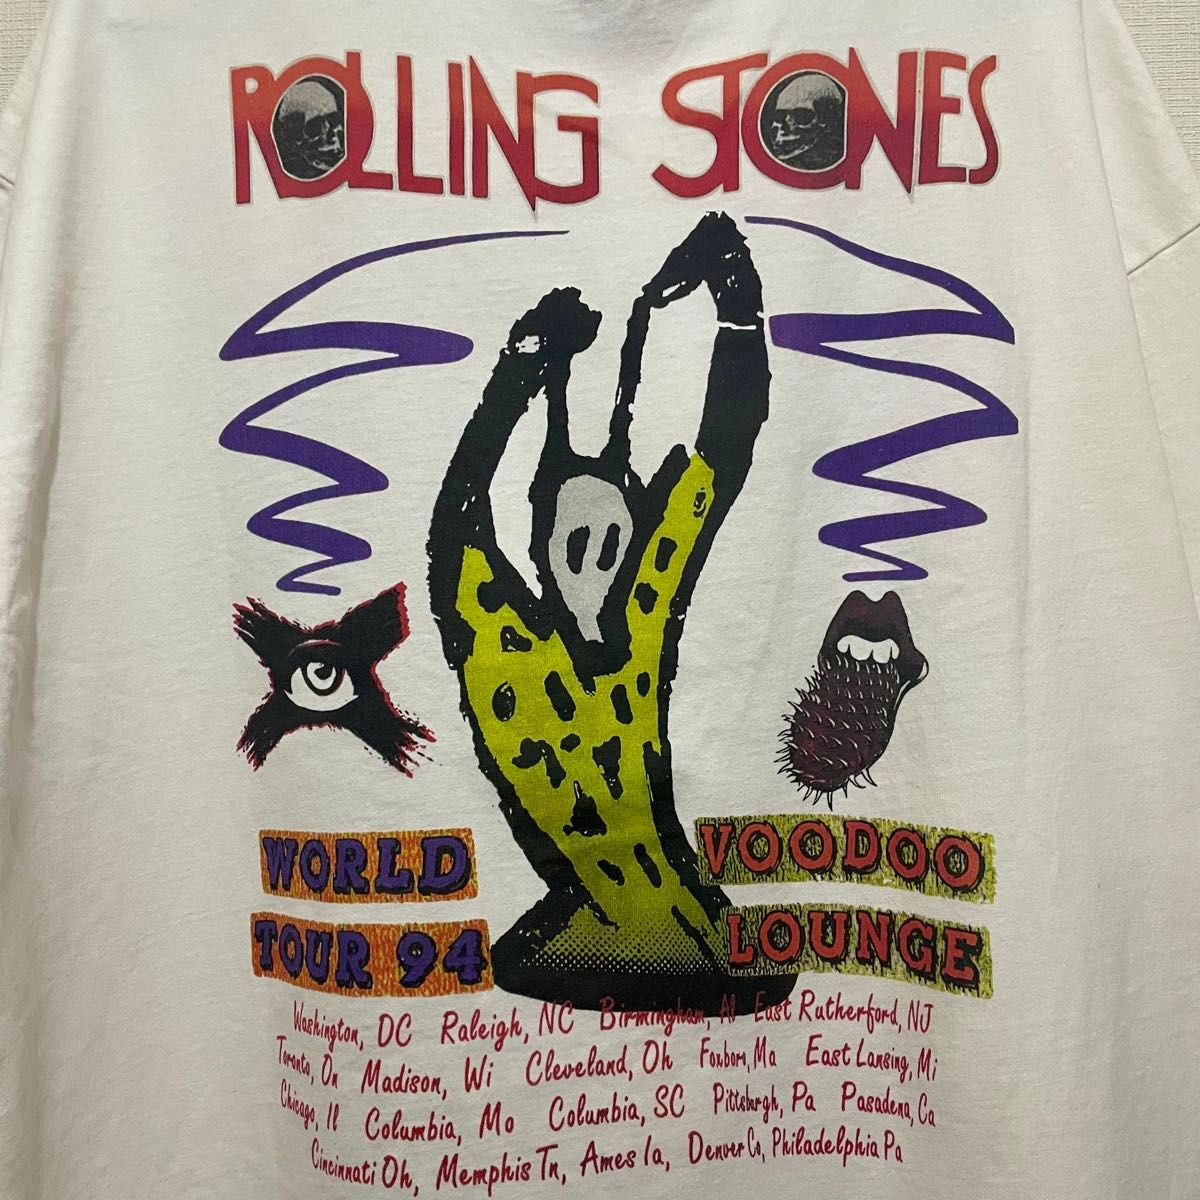 The Rolling Stones Tシャツ Lサイズ ザローリングストーンズ Tee ロックファッション